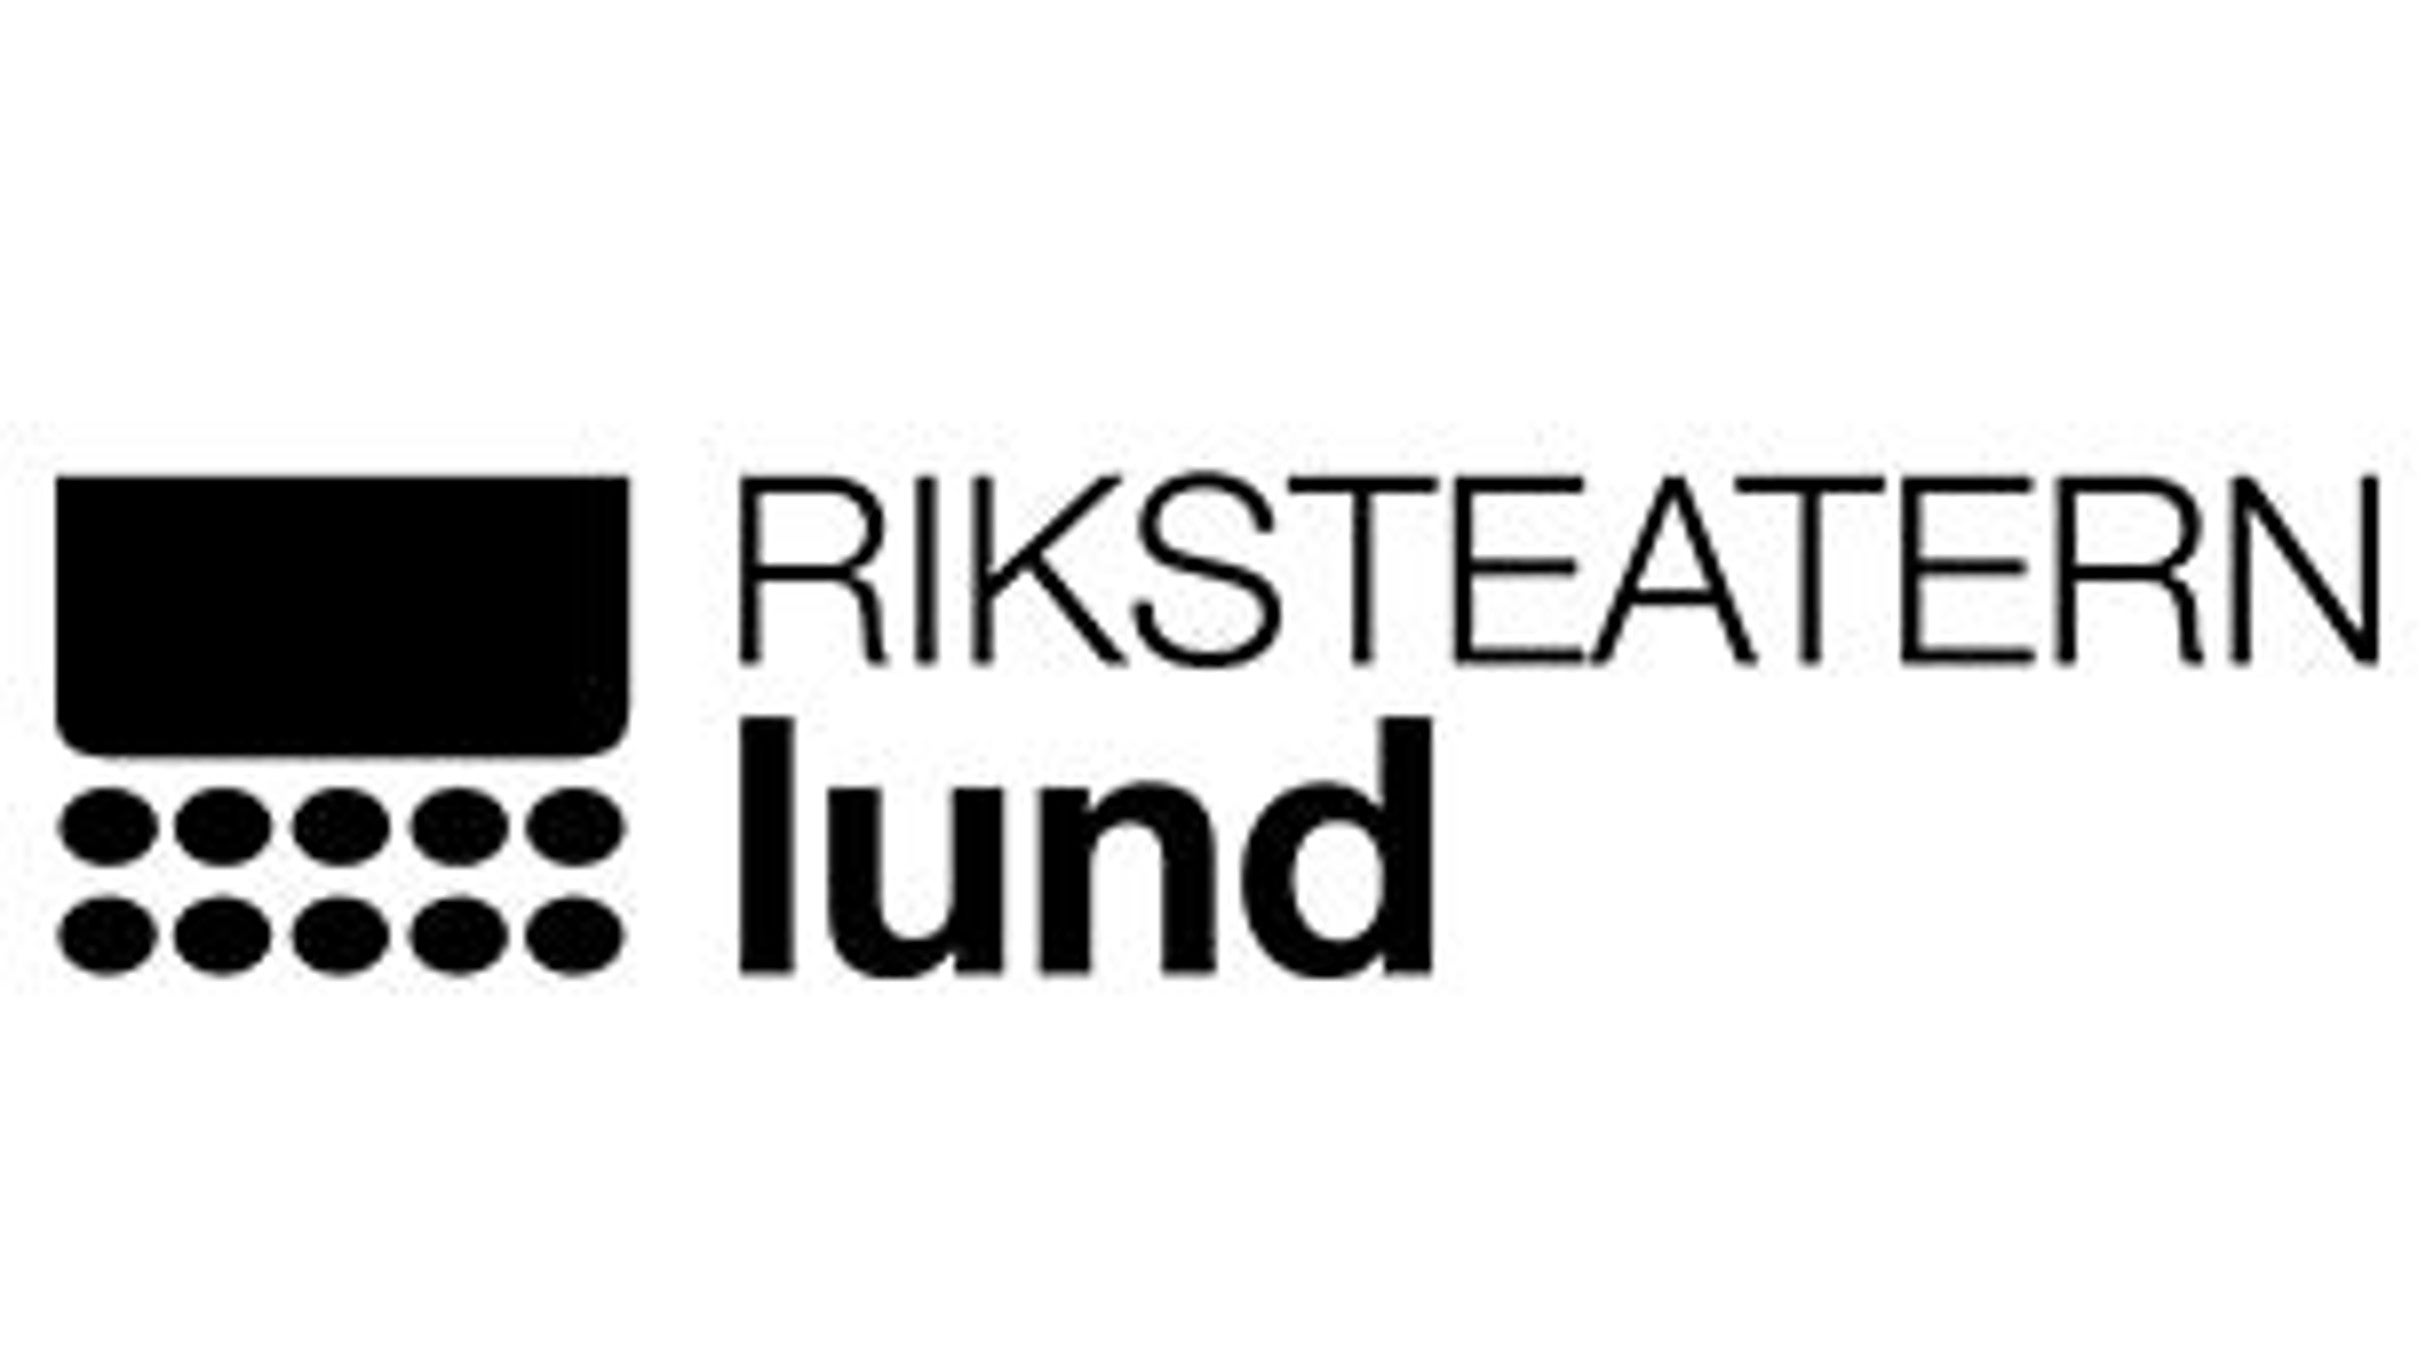 Lunds Teaterforening presale information on freepresalepasswords.com